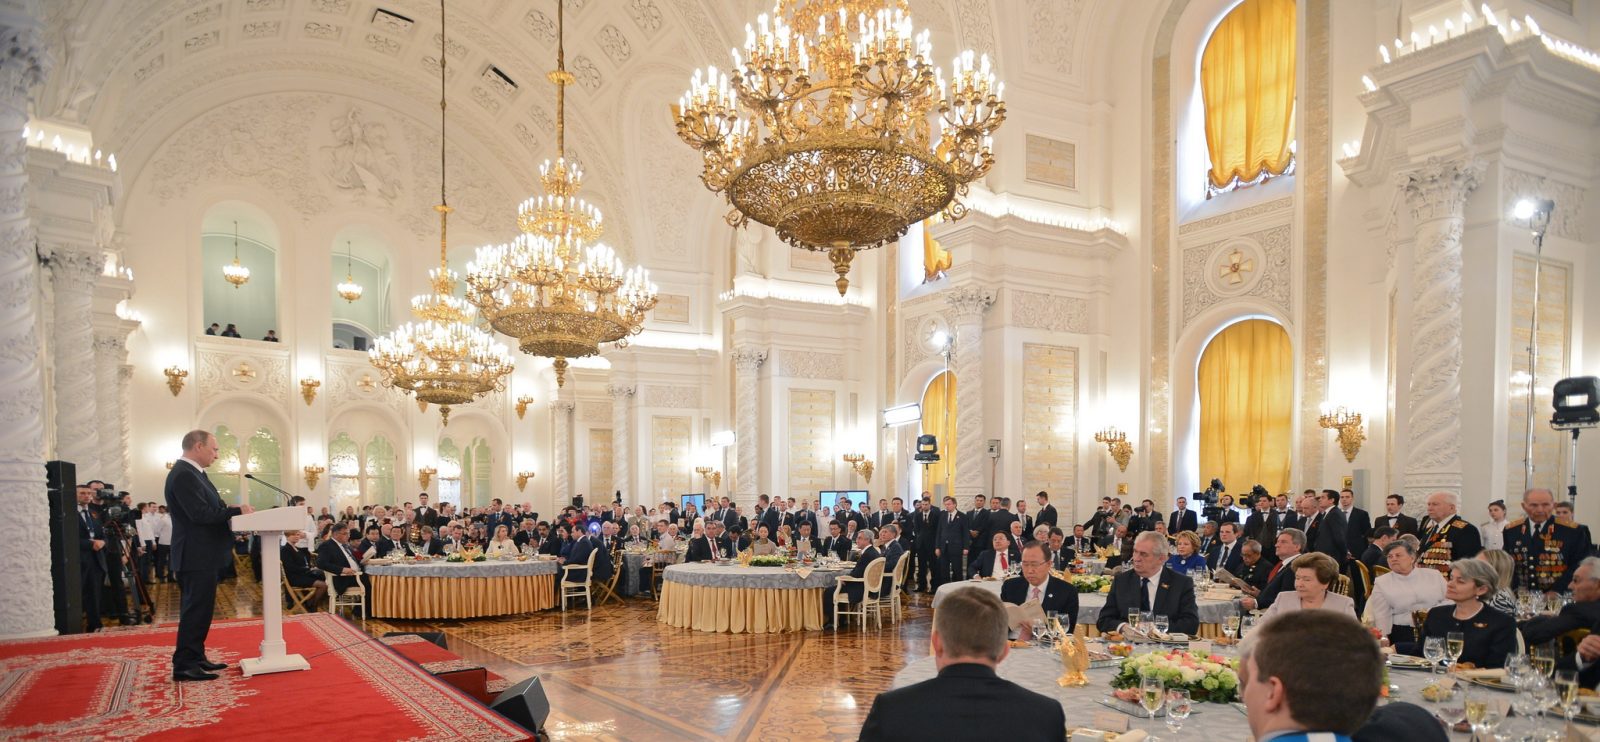 Русский выбор... В Георгиевском зале проходят мероприятия с участием президента РФ